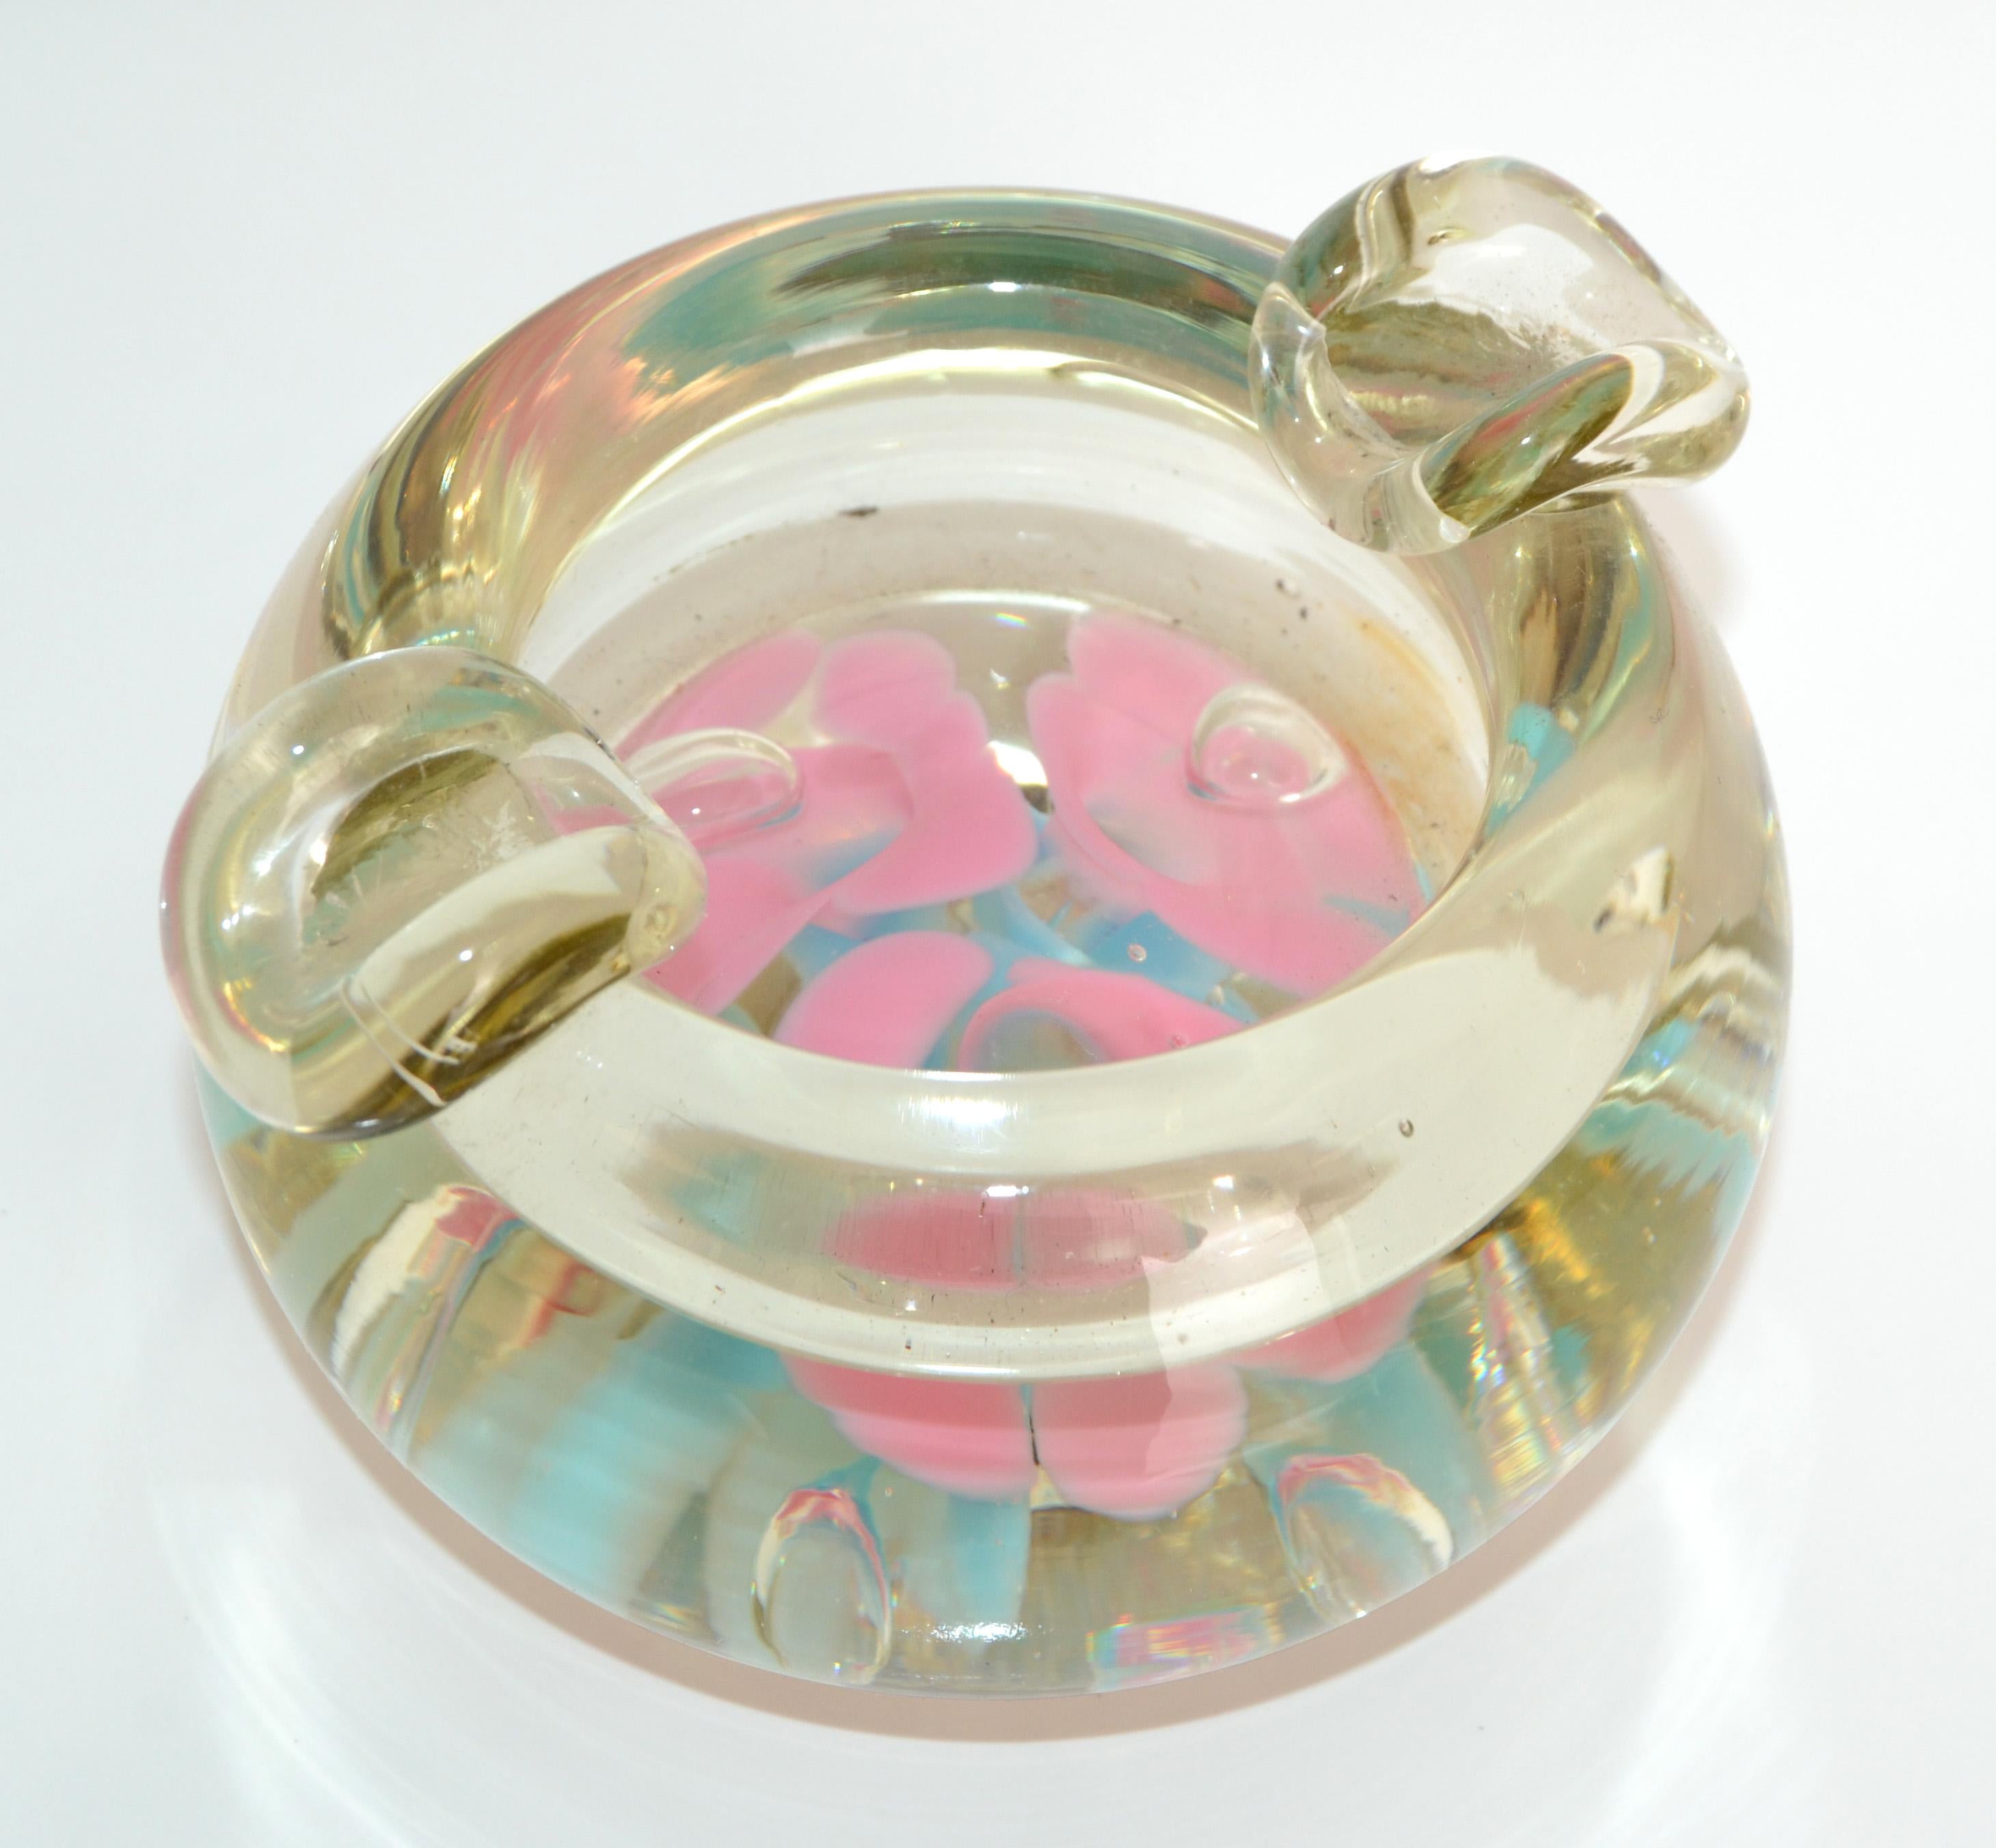 Bol en verre soufflé transparent à triple paroi en verre de Murano, datant du milieu du siècle dernier, avec des fleurs flottantes roses et bleues, pour attraper ou cendrier. 
Fabriqué en 1960.
Tout simplement magnifique.